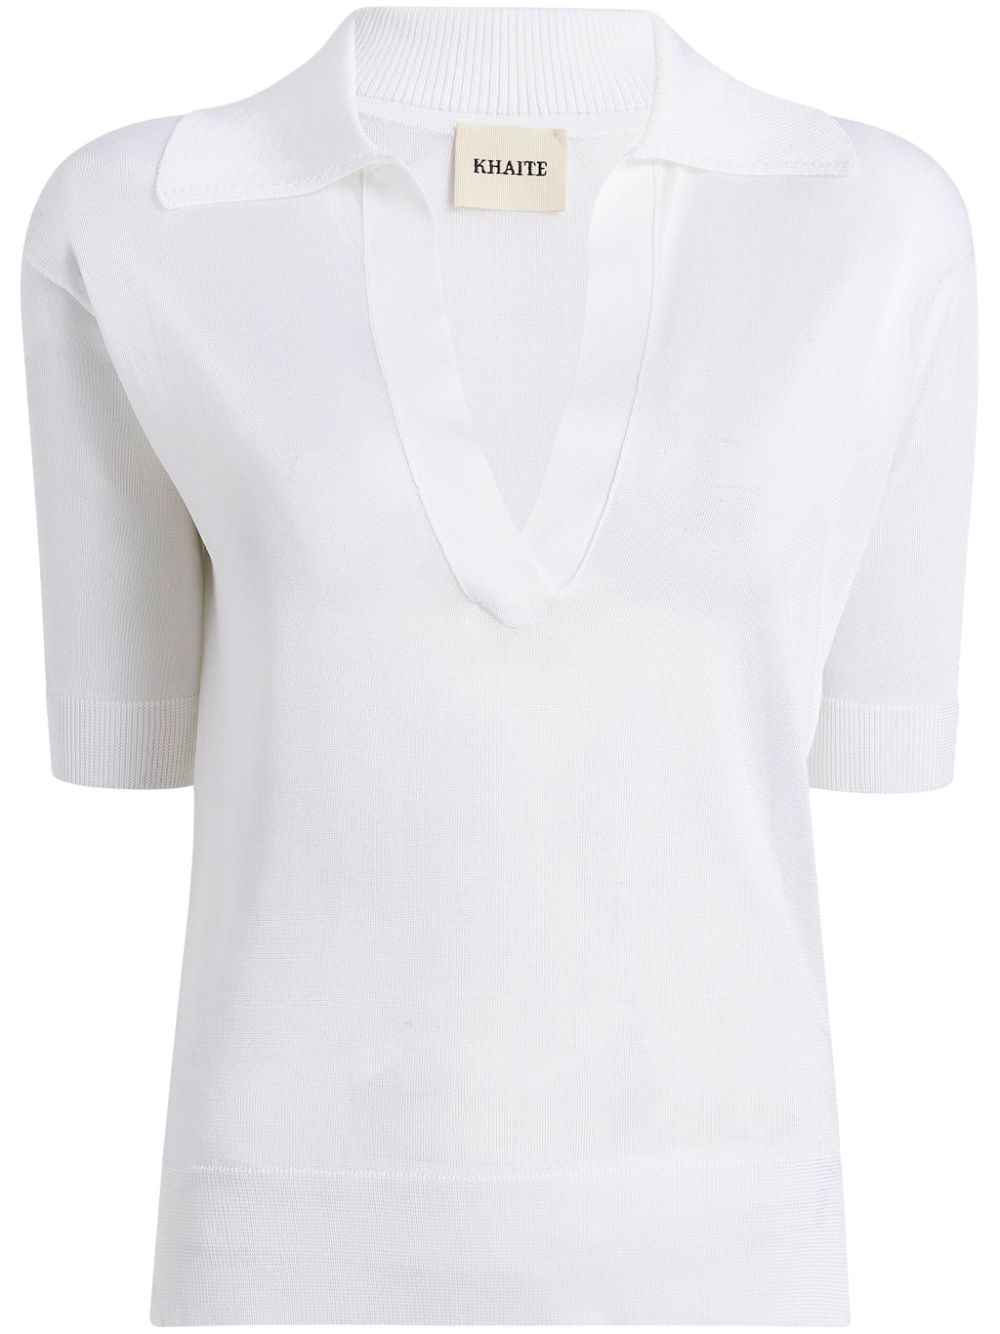 قميص من الفسكوز بياقة مطوية ورقبة على شكل V وأكمام قصيرة وحافة مستقيمة